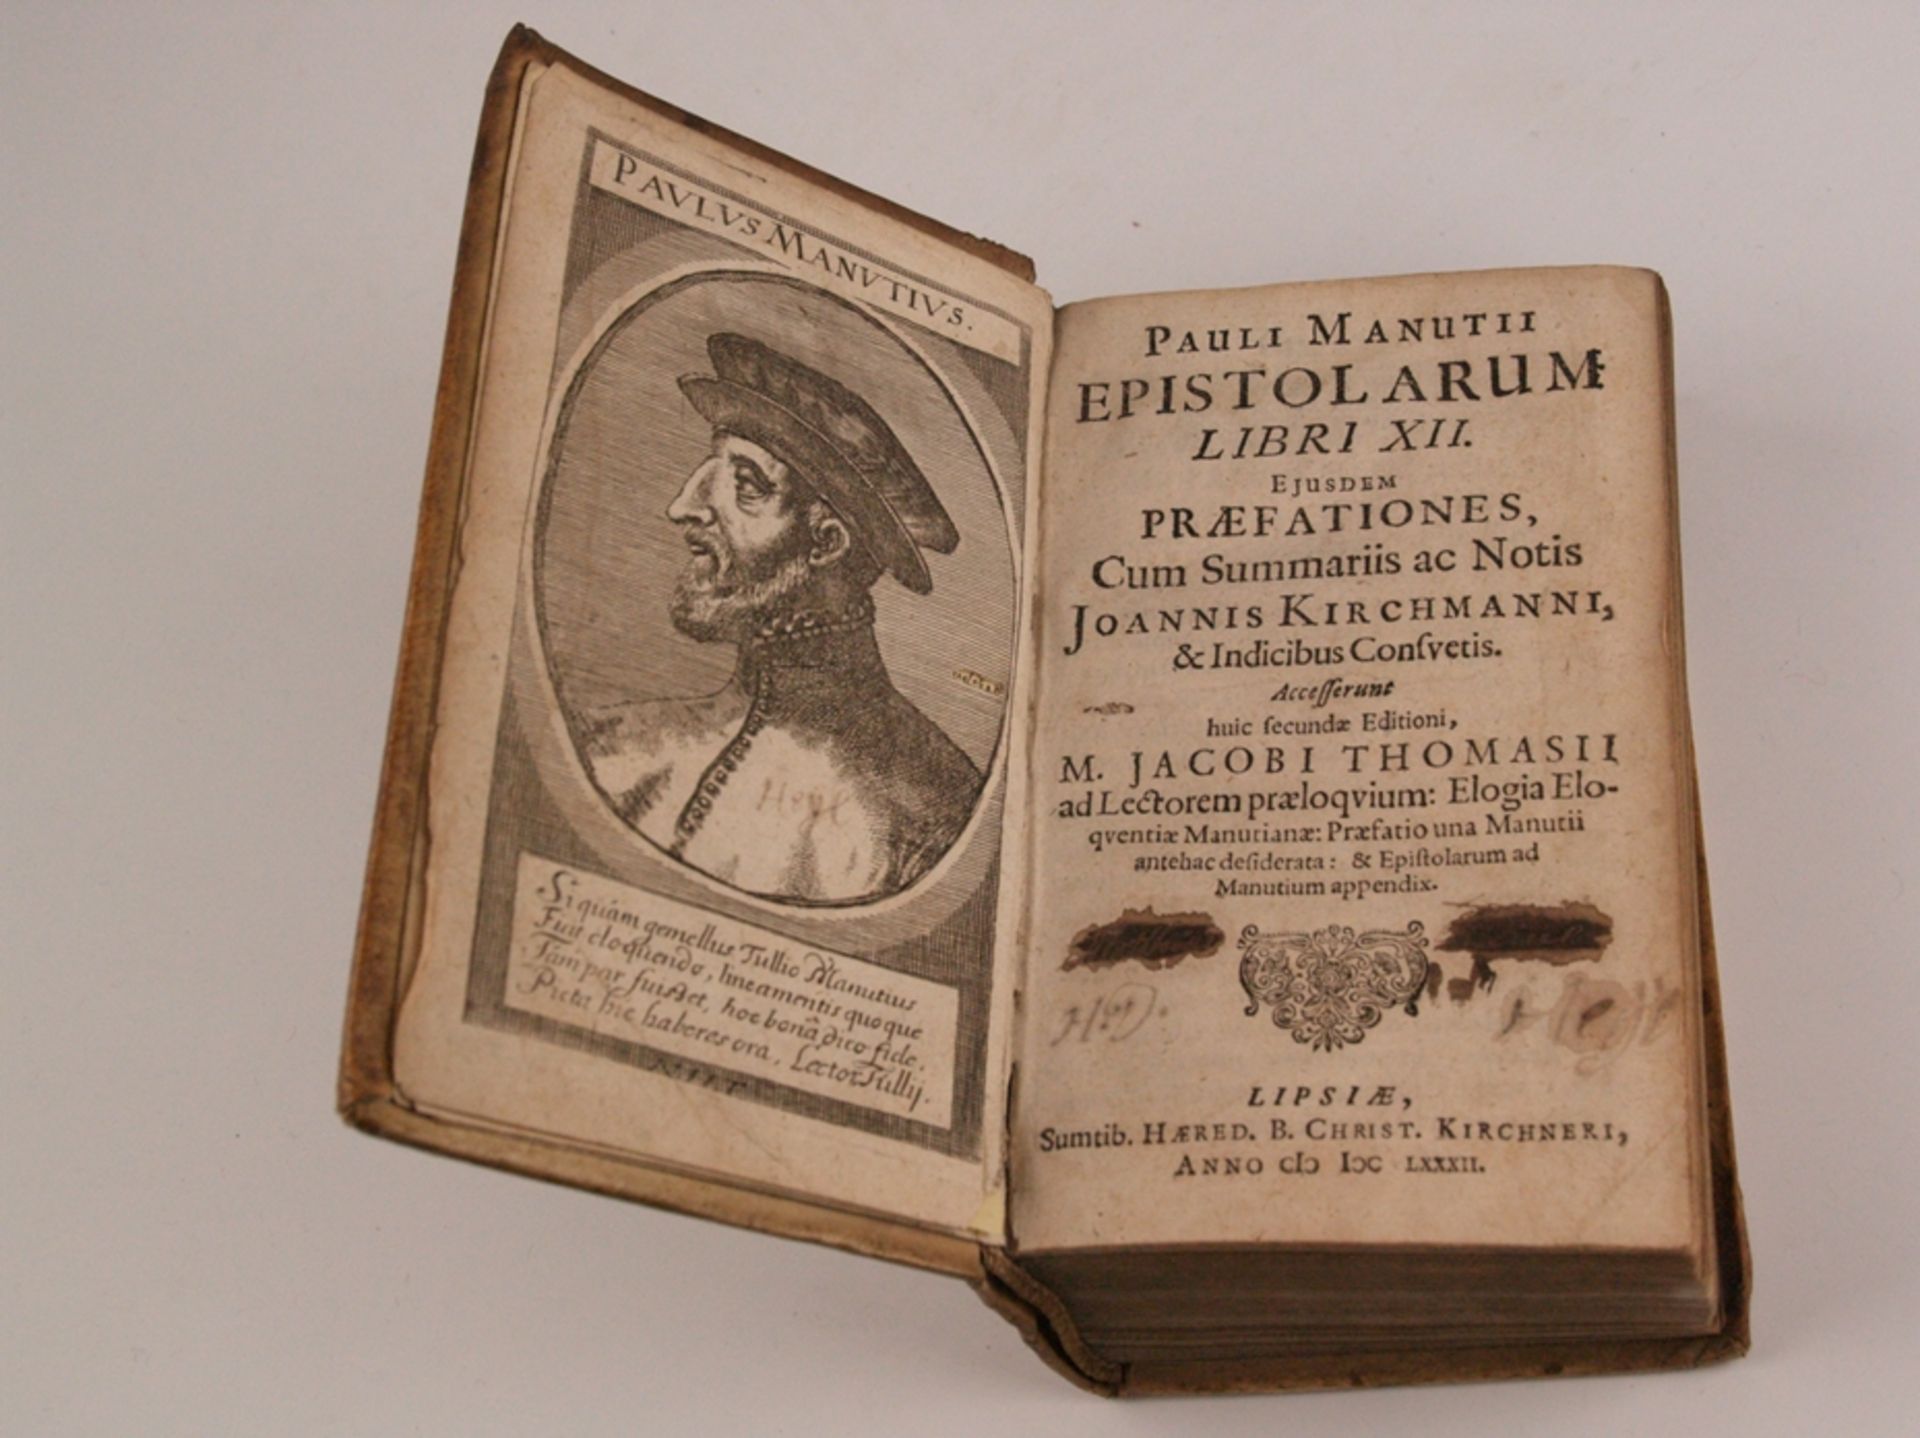 Manutius, Paulus - Paulli Manutii Epistolarum libri XII: Eiusdem Quae Praefationes, Cum Summariis a